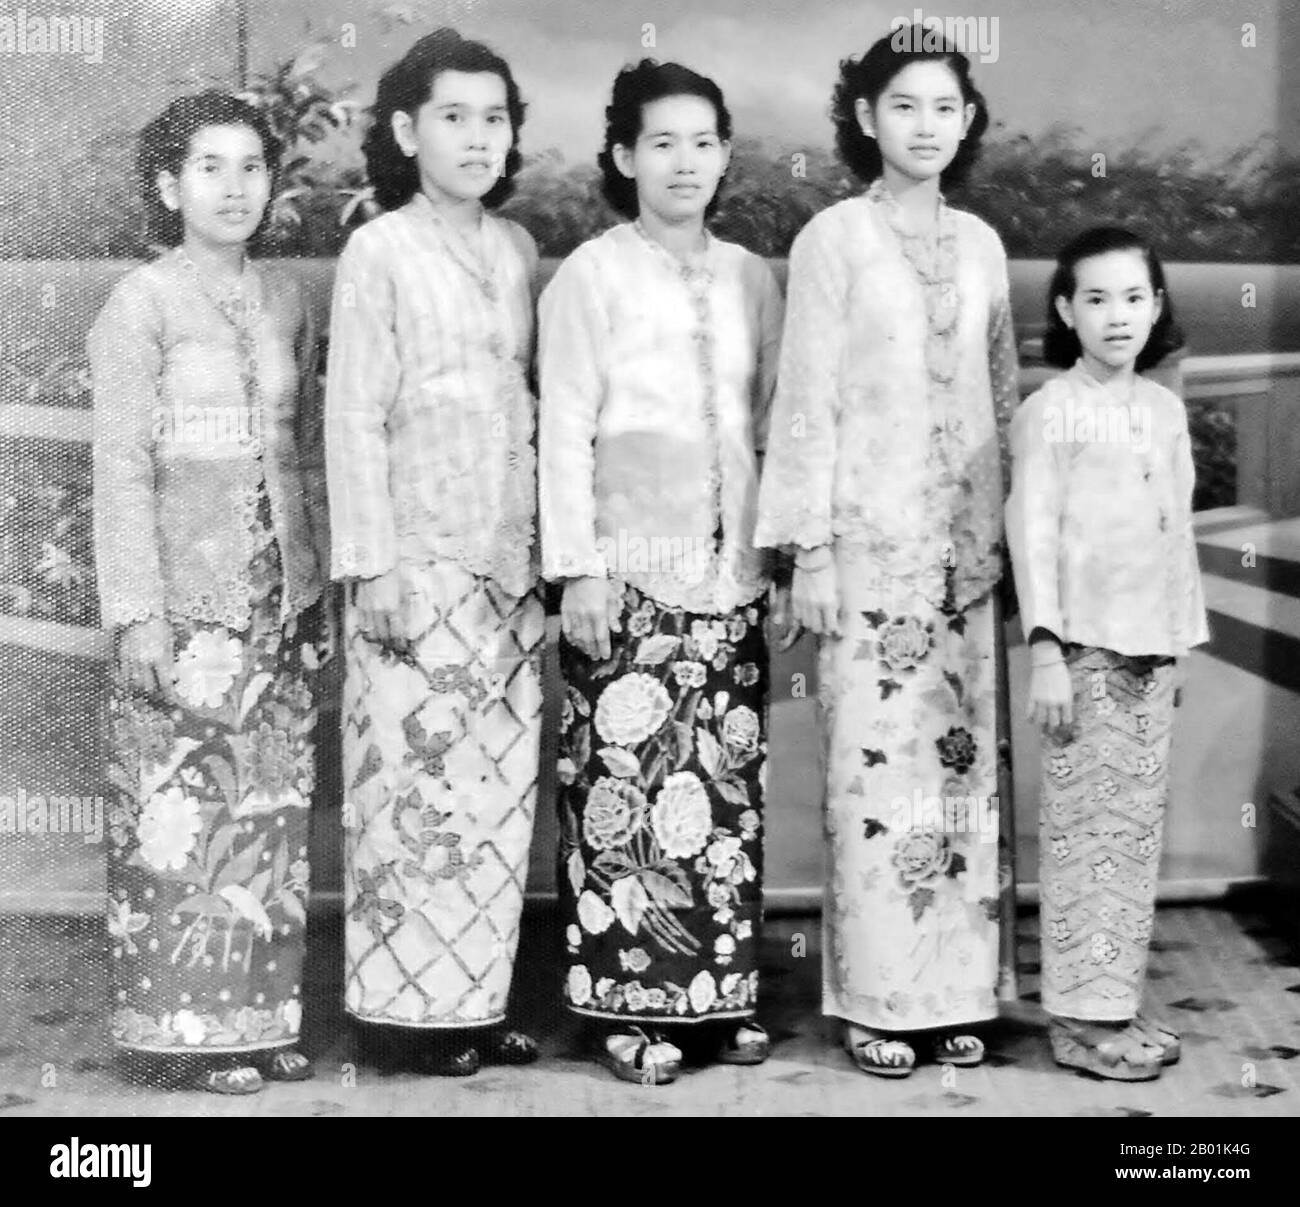 Malaysia/Singapur: Nyonya-Frauen tragen Sarong-Kebaya-Kleid, typisch für die chinesische Gemeinde Peranakan Straits, um 1950. Peranakan-Chinesen und Baba-Nyonya sind Begriffe, die für die Nachfahren chinesischer Einwanderer aus dem späten 15. Und 16. Jahrhundert verwendet werden, die während der Kolonialzeit auf die malaiisch-indonesischen Inseln von Nusantara kamen. Mitglieder dieser Gemeinde in Malaysia bezeichnen sich als „Nyonya-Baba“ oder „Baba-Nyonya“. Nyonya ist der Begriff für die Weibchen und Baba für die Männchen. Sie gilt insbesondere für die ethnische chinesische Bevölkerung der Siedlungen in der Britischen Straße von Malaya. Stockfoto